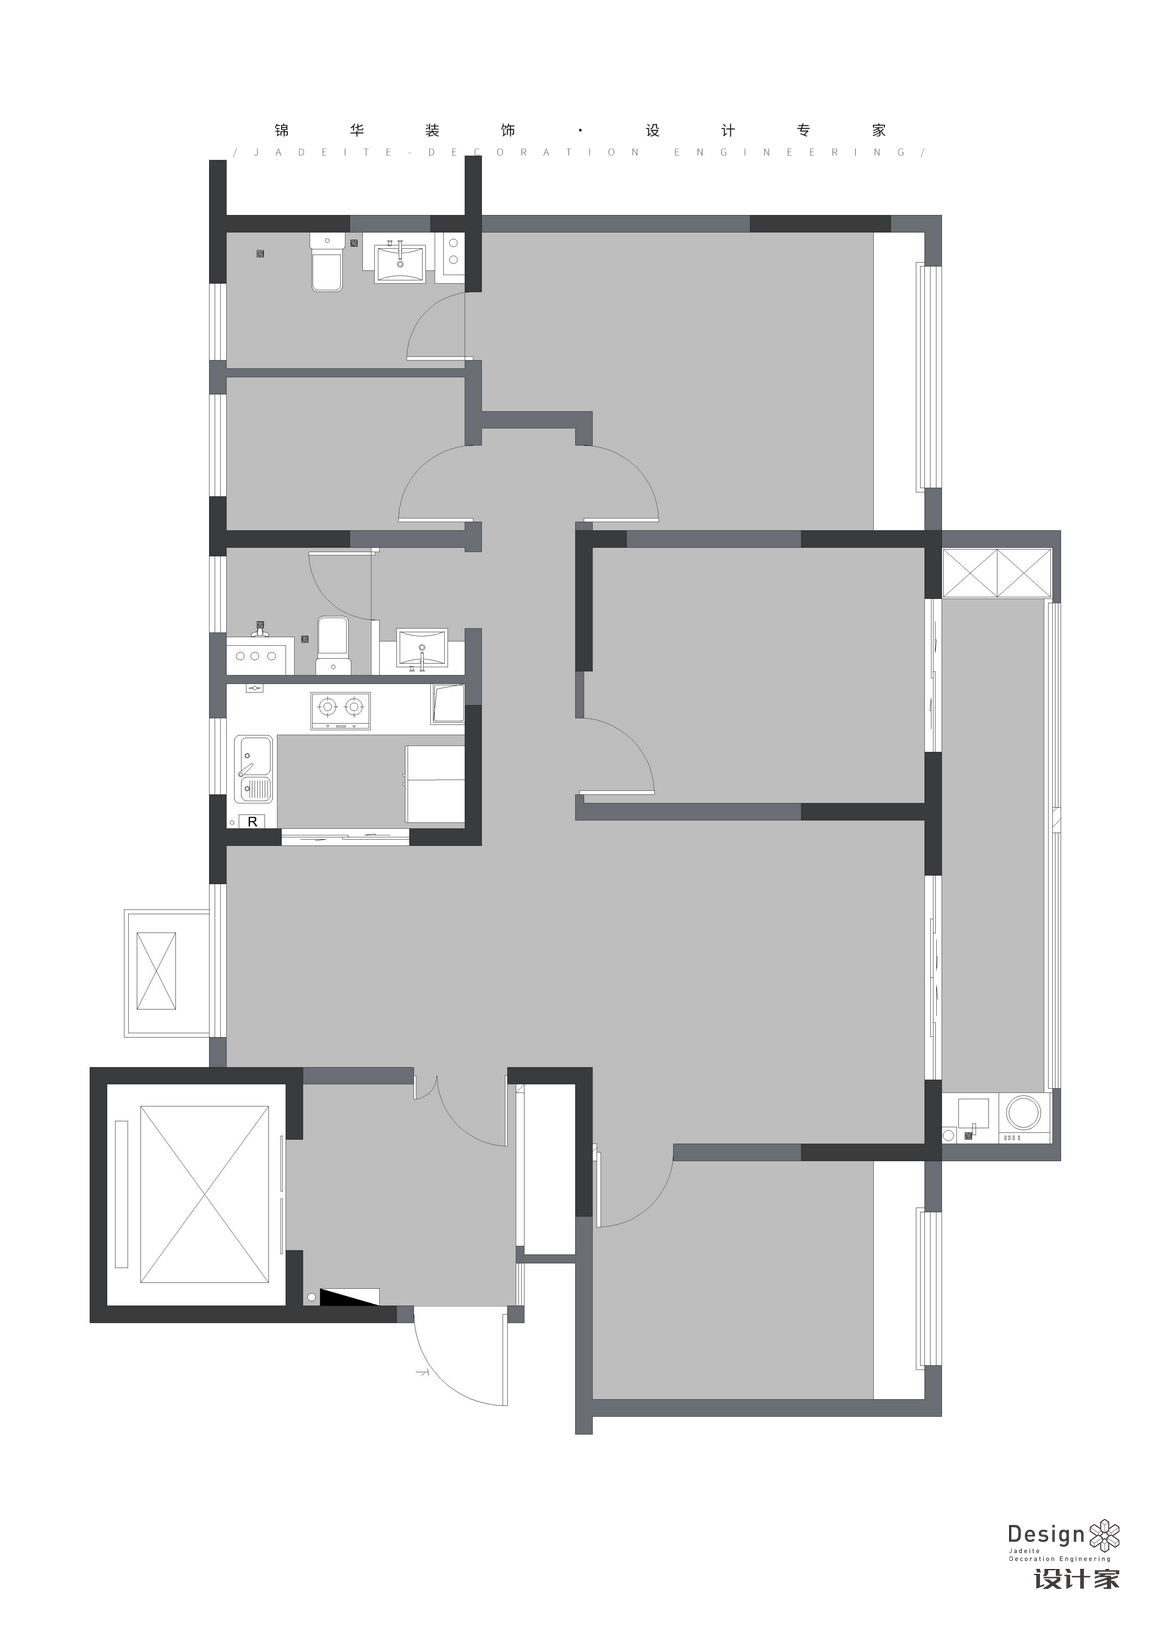 現代簡約-紫金悅峯-四室兩廳-130㎡裝修-四室兩廳-現代簡約